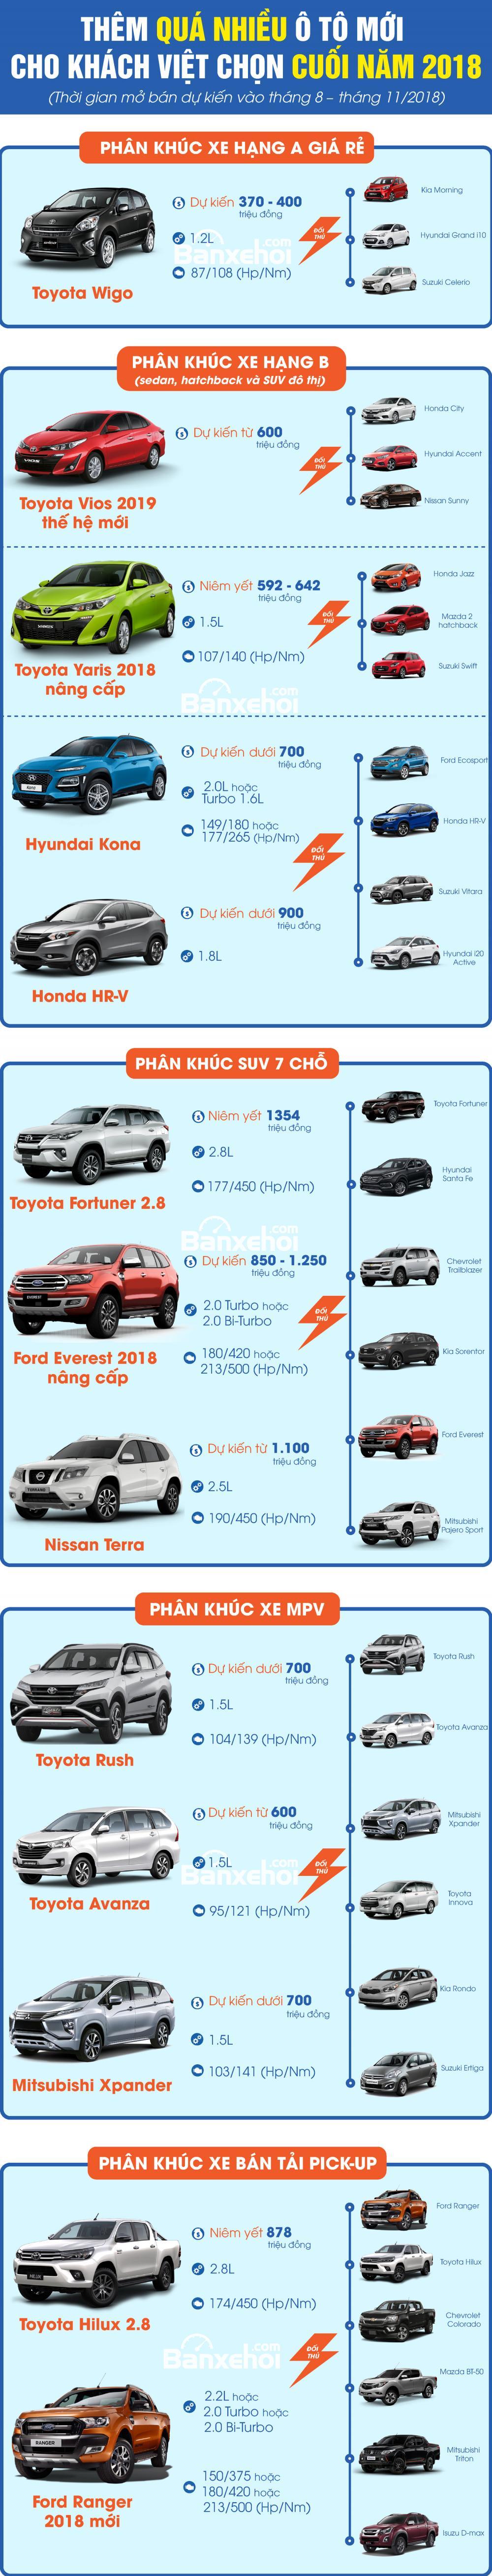 13 mẫu ô tô mới sắp đổ bộ Việt Nam nửa cuối năm 2018..